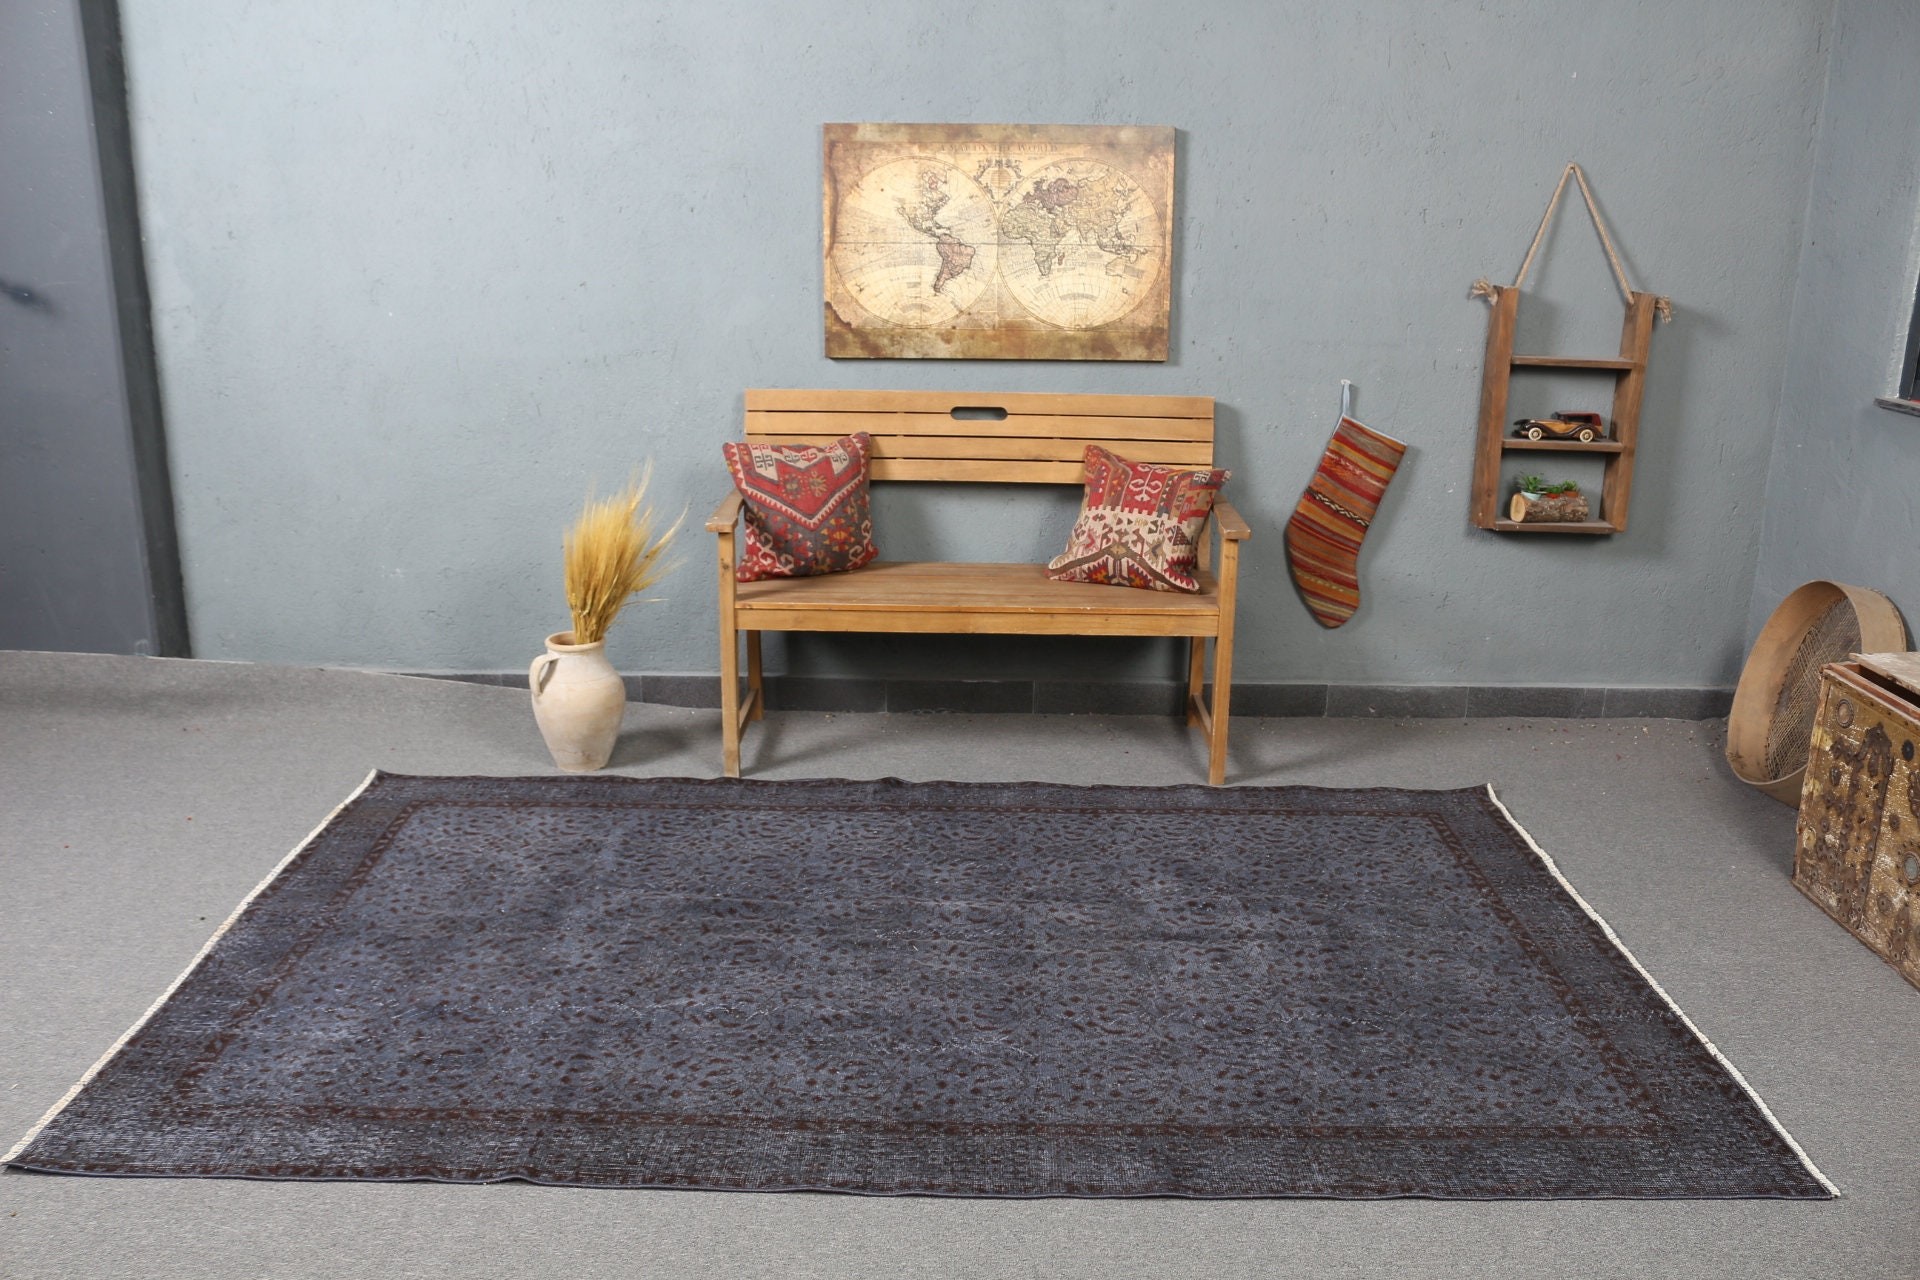 Vintage Rug, Home Decor Rug, Bedroom Rugs, Living Room Rugs, Anatolian Rug, Gray Cool Rug, Turkish Rugs, Handwoven Rug, 5.5x9 ft Large Rug